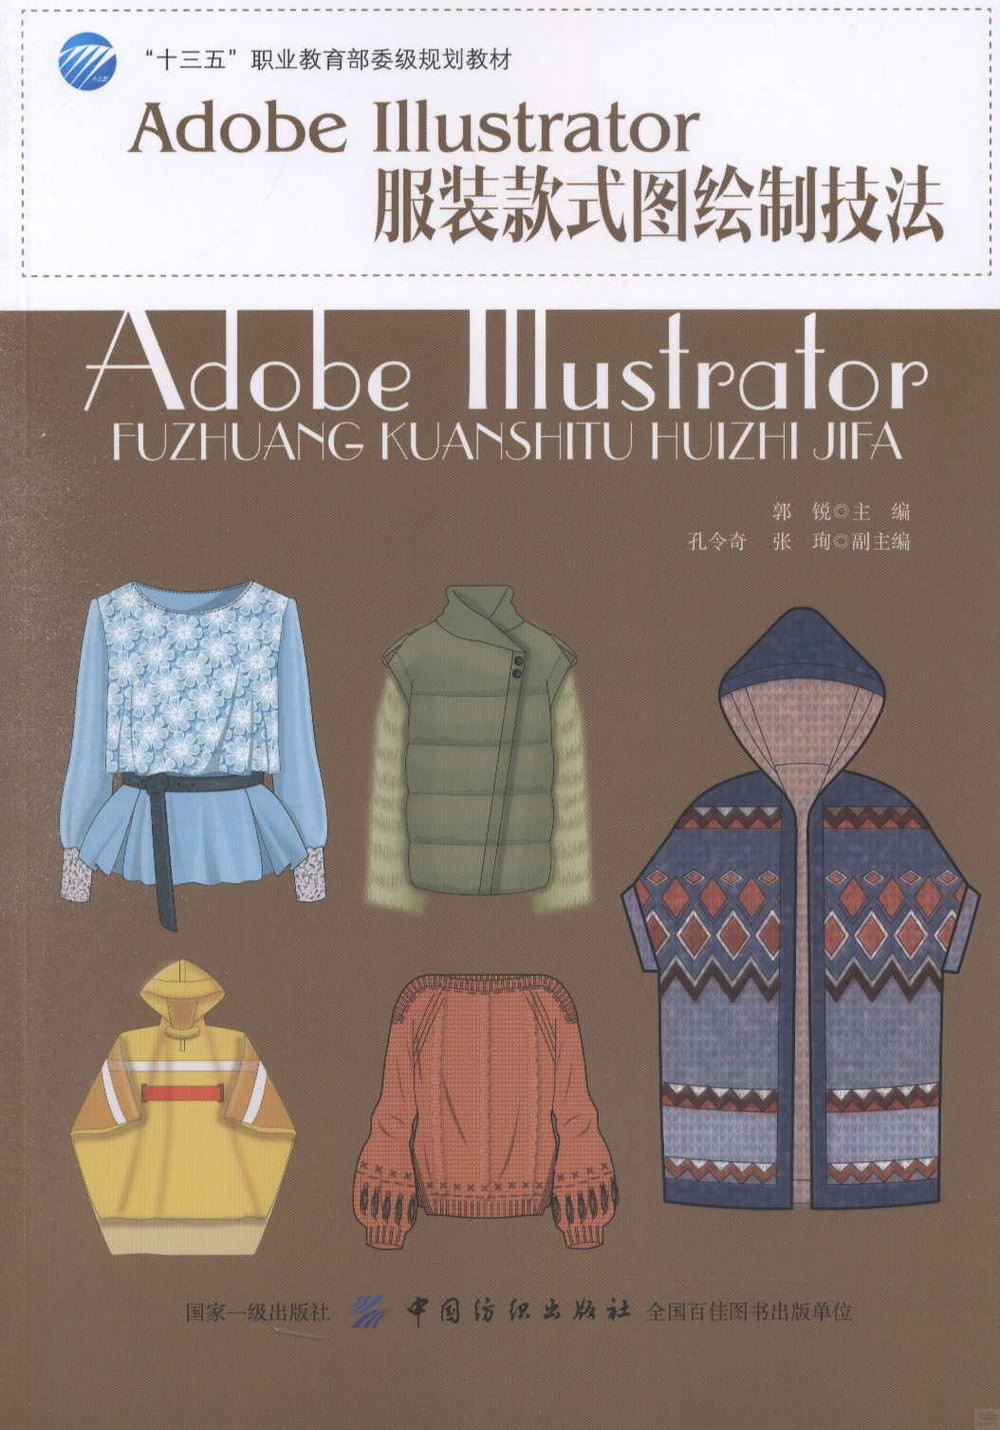 Adobe Illustrator服裝款式圖繪製技法